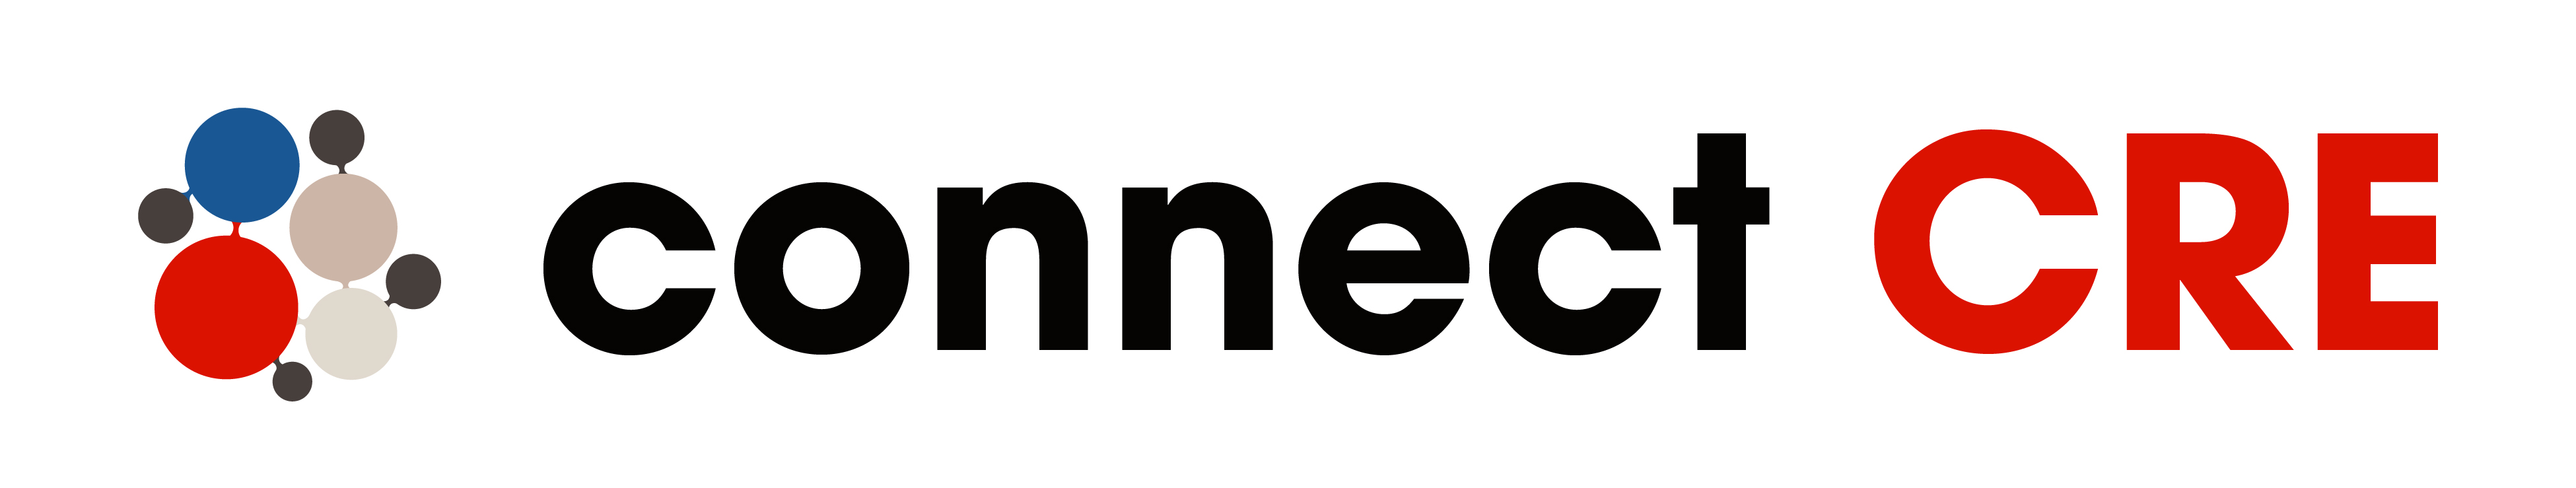 ConnectCRE_Connect Logo